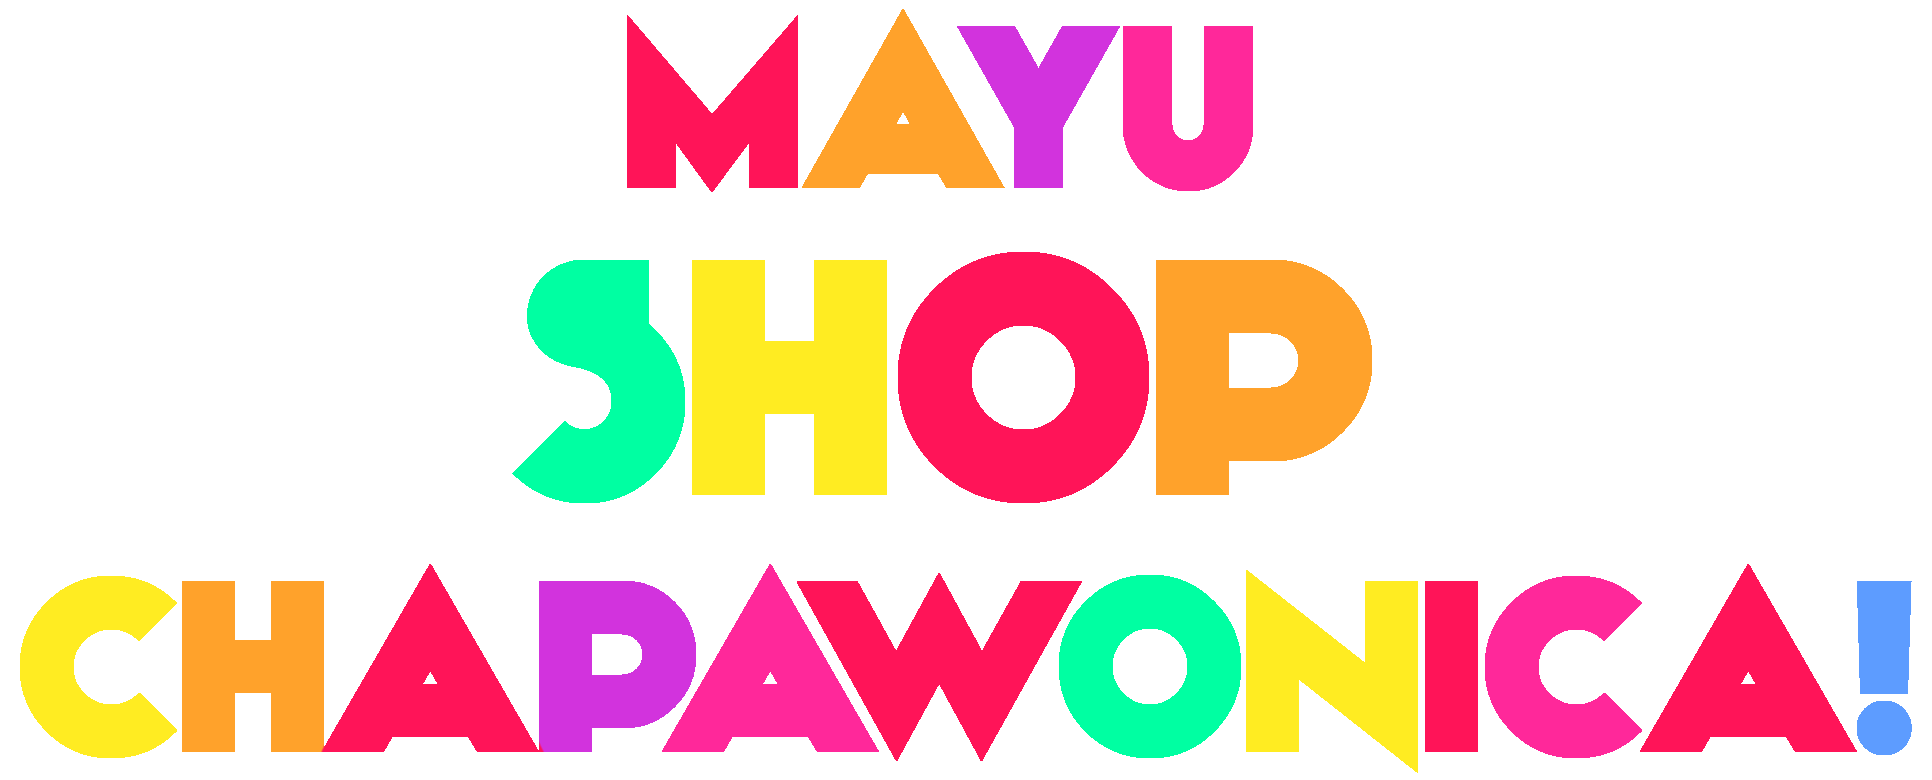 MAYU SHOP CHAPAWONICA